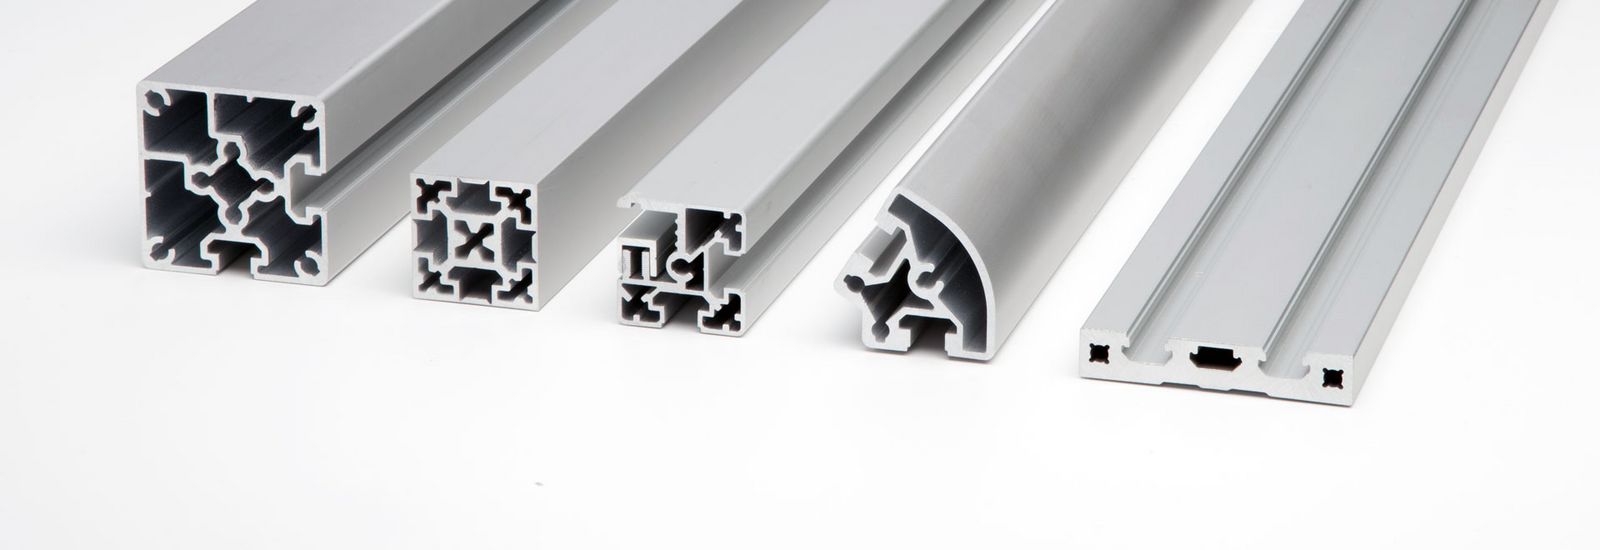 Perfil de Aluminio, ¿Qué es y cuáles son sus usos? - Ebroaire